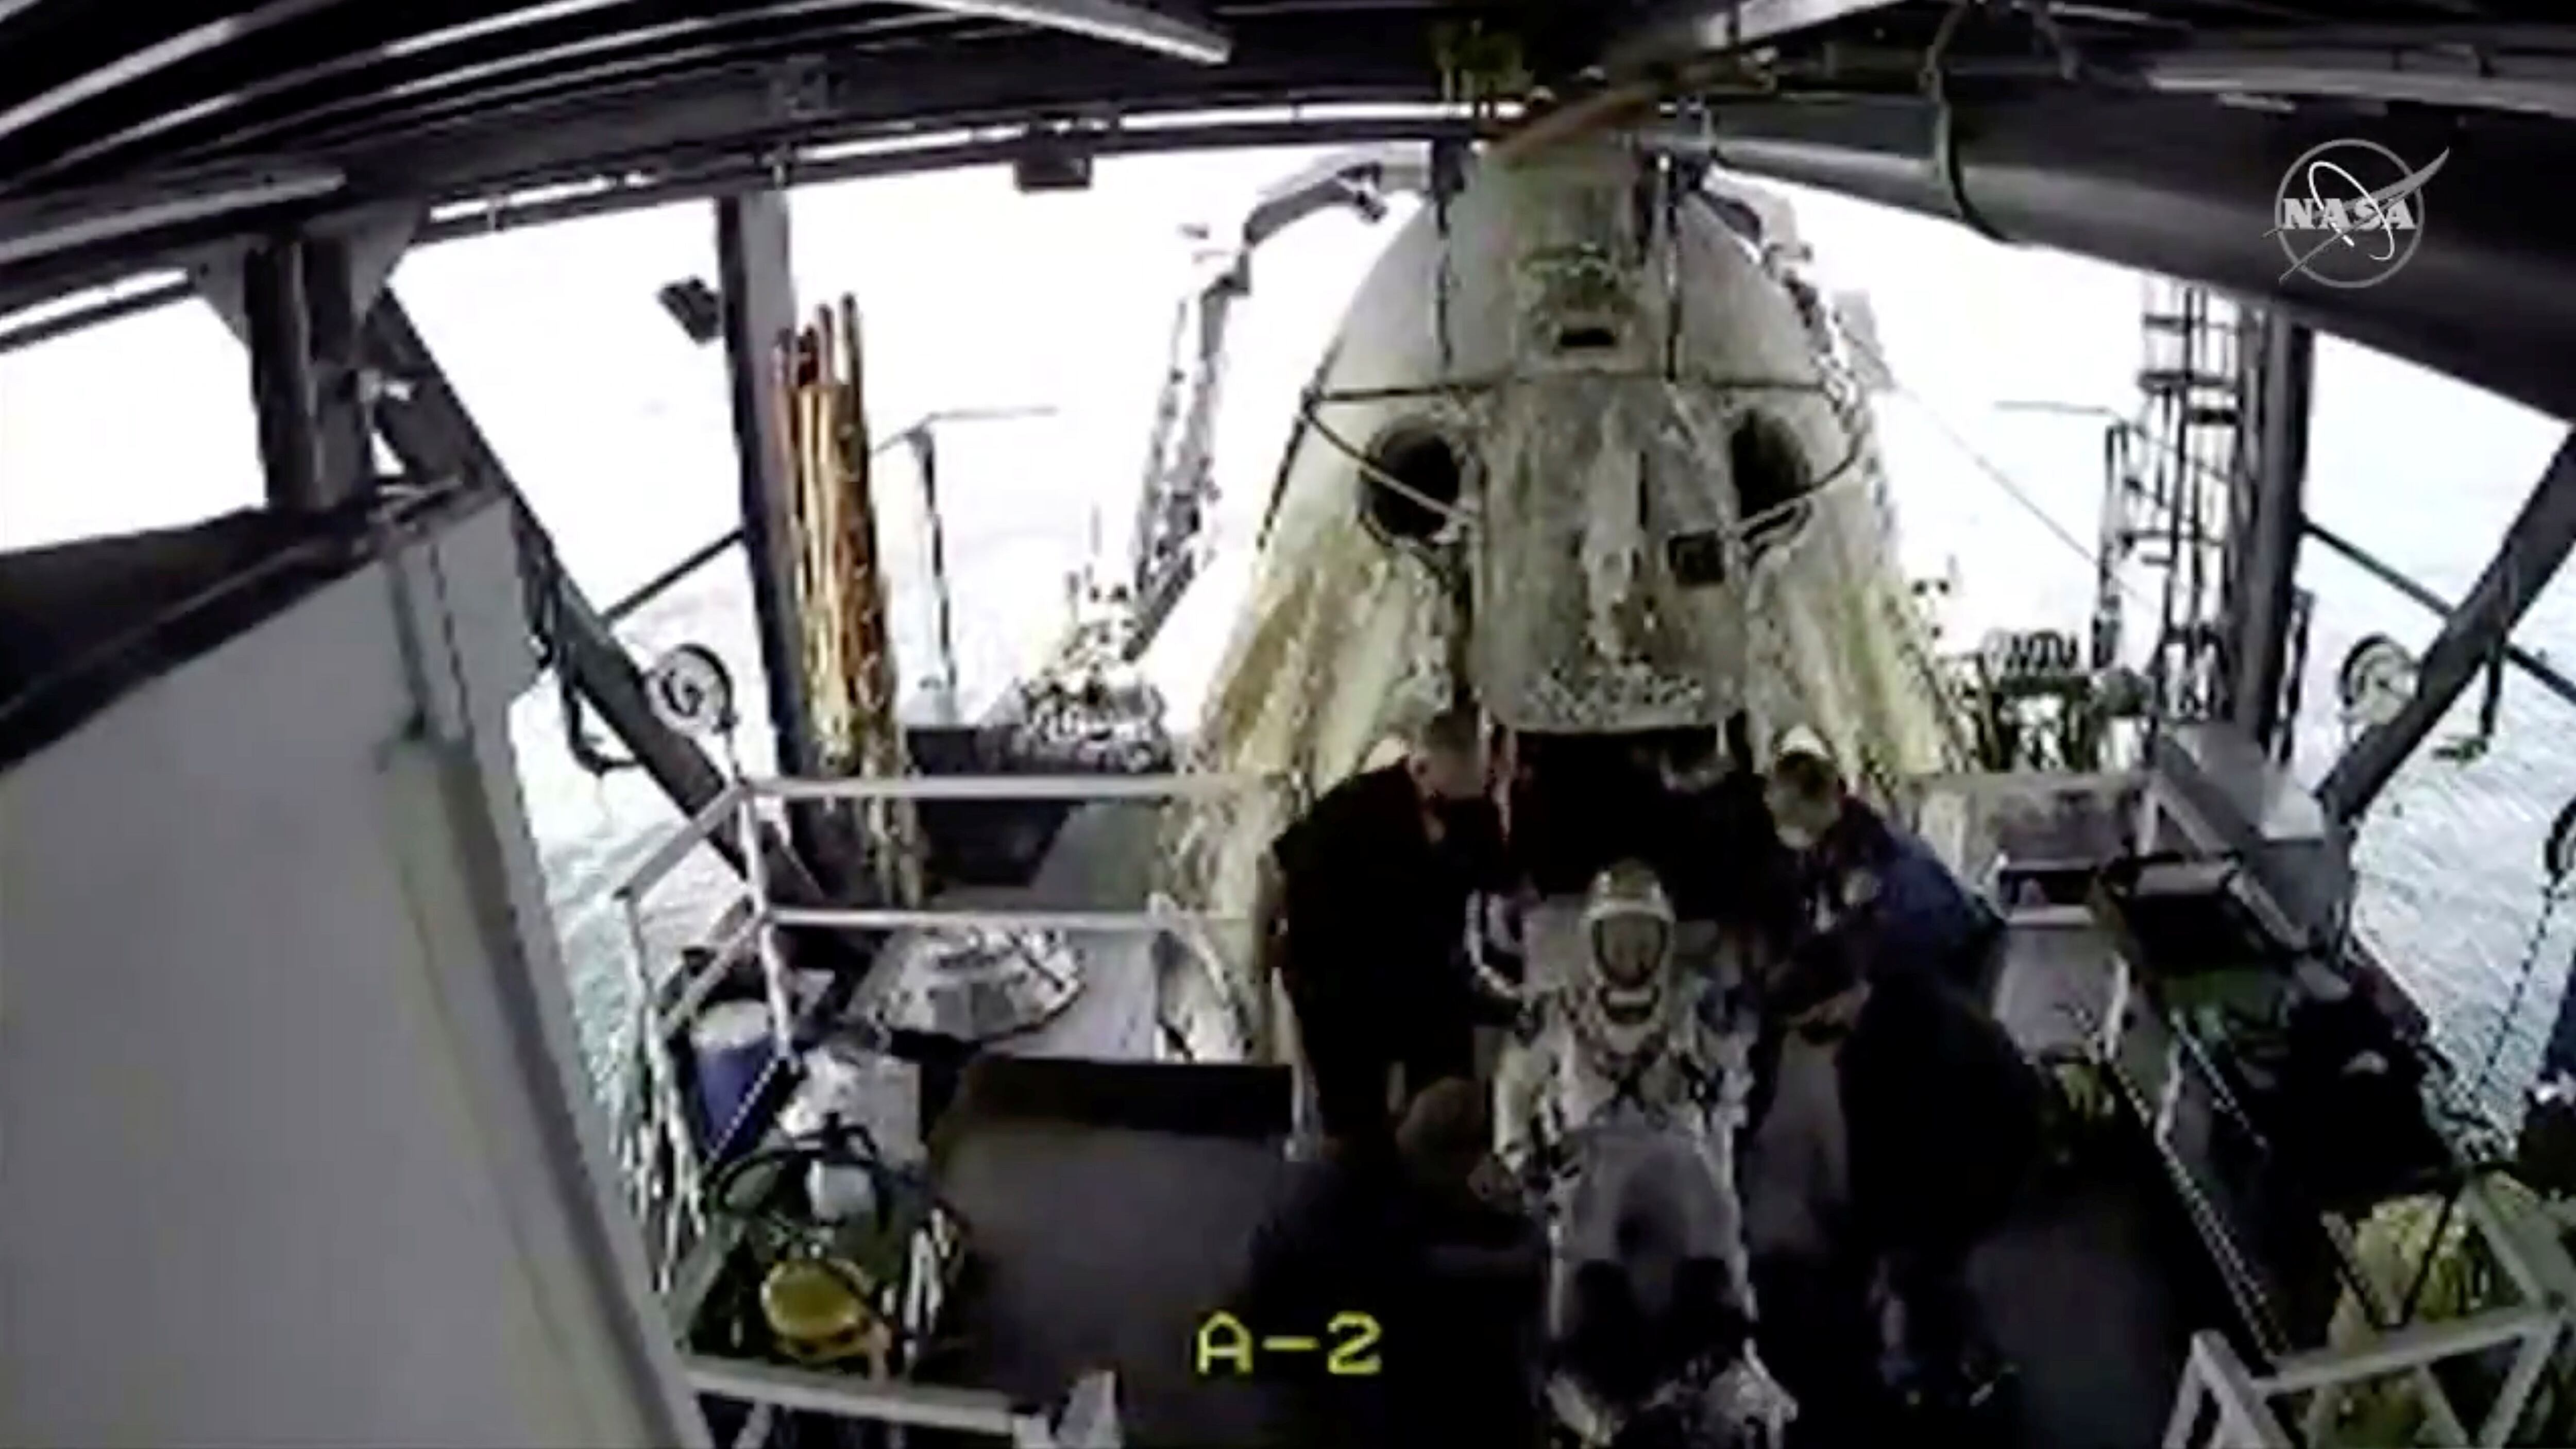 El momento en que uno de los astronautas sale de la cápsula (NASA/Handout via REUTERS)